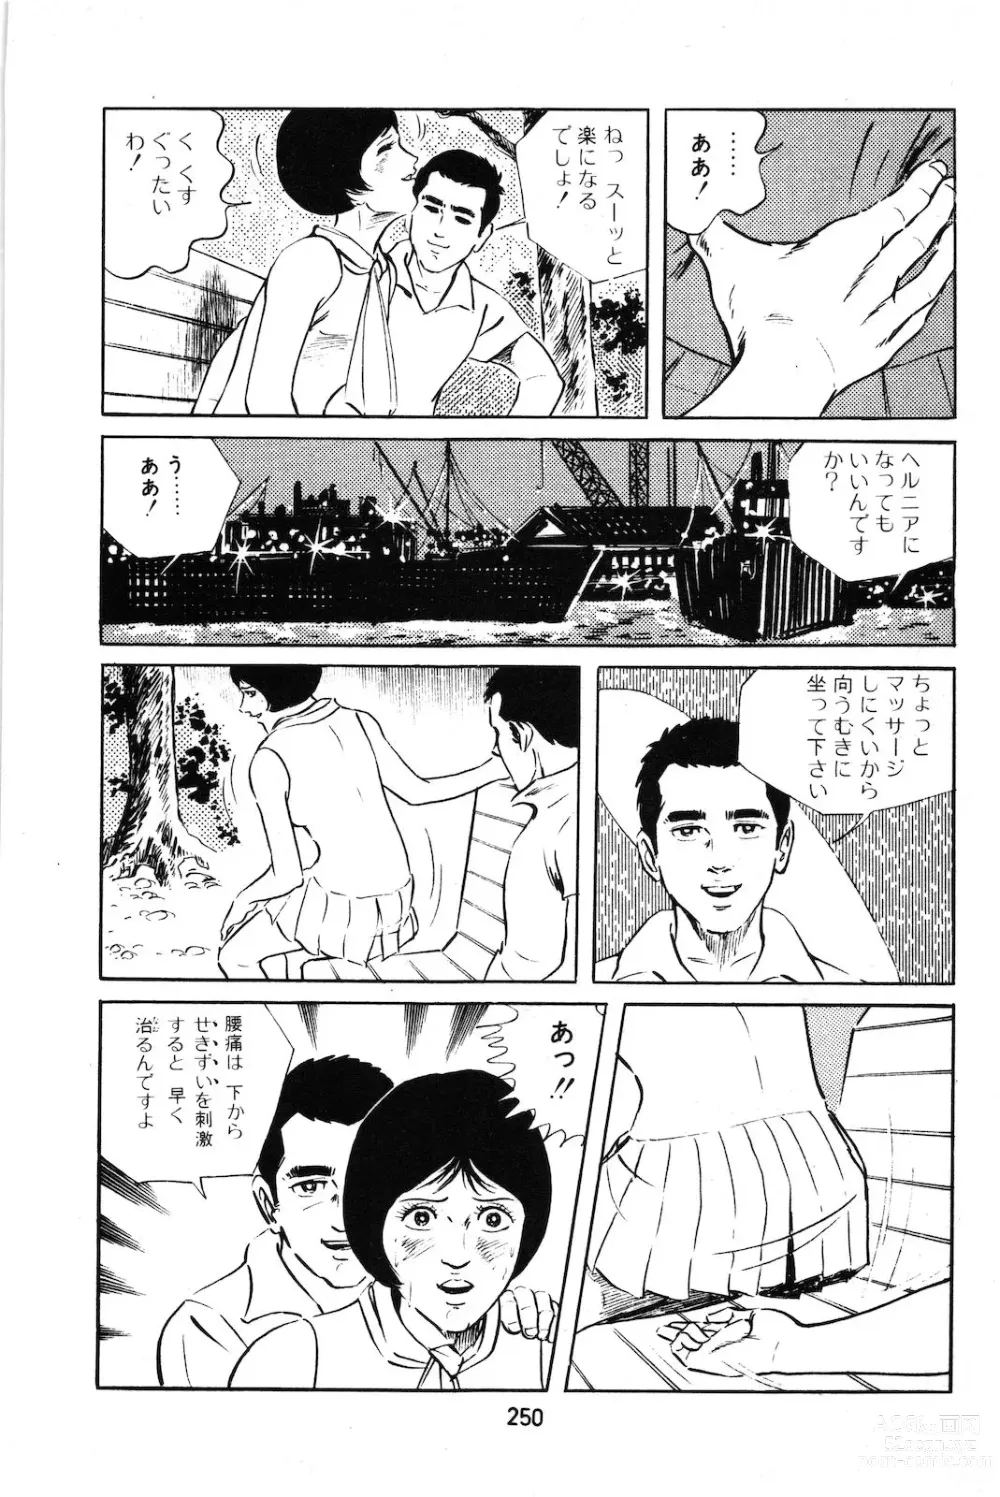 Page 20 of manga Koukousei Burai Hikae 1-8